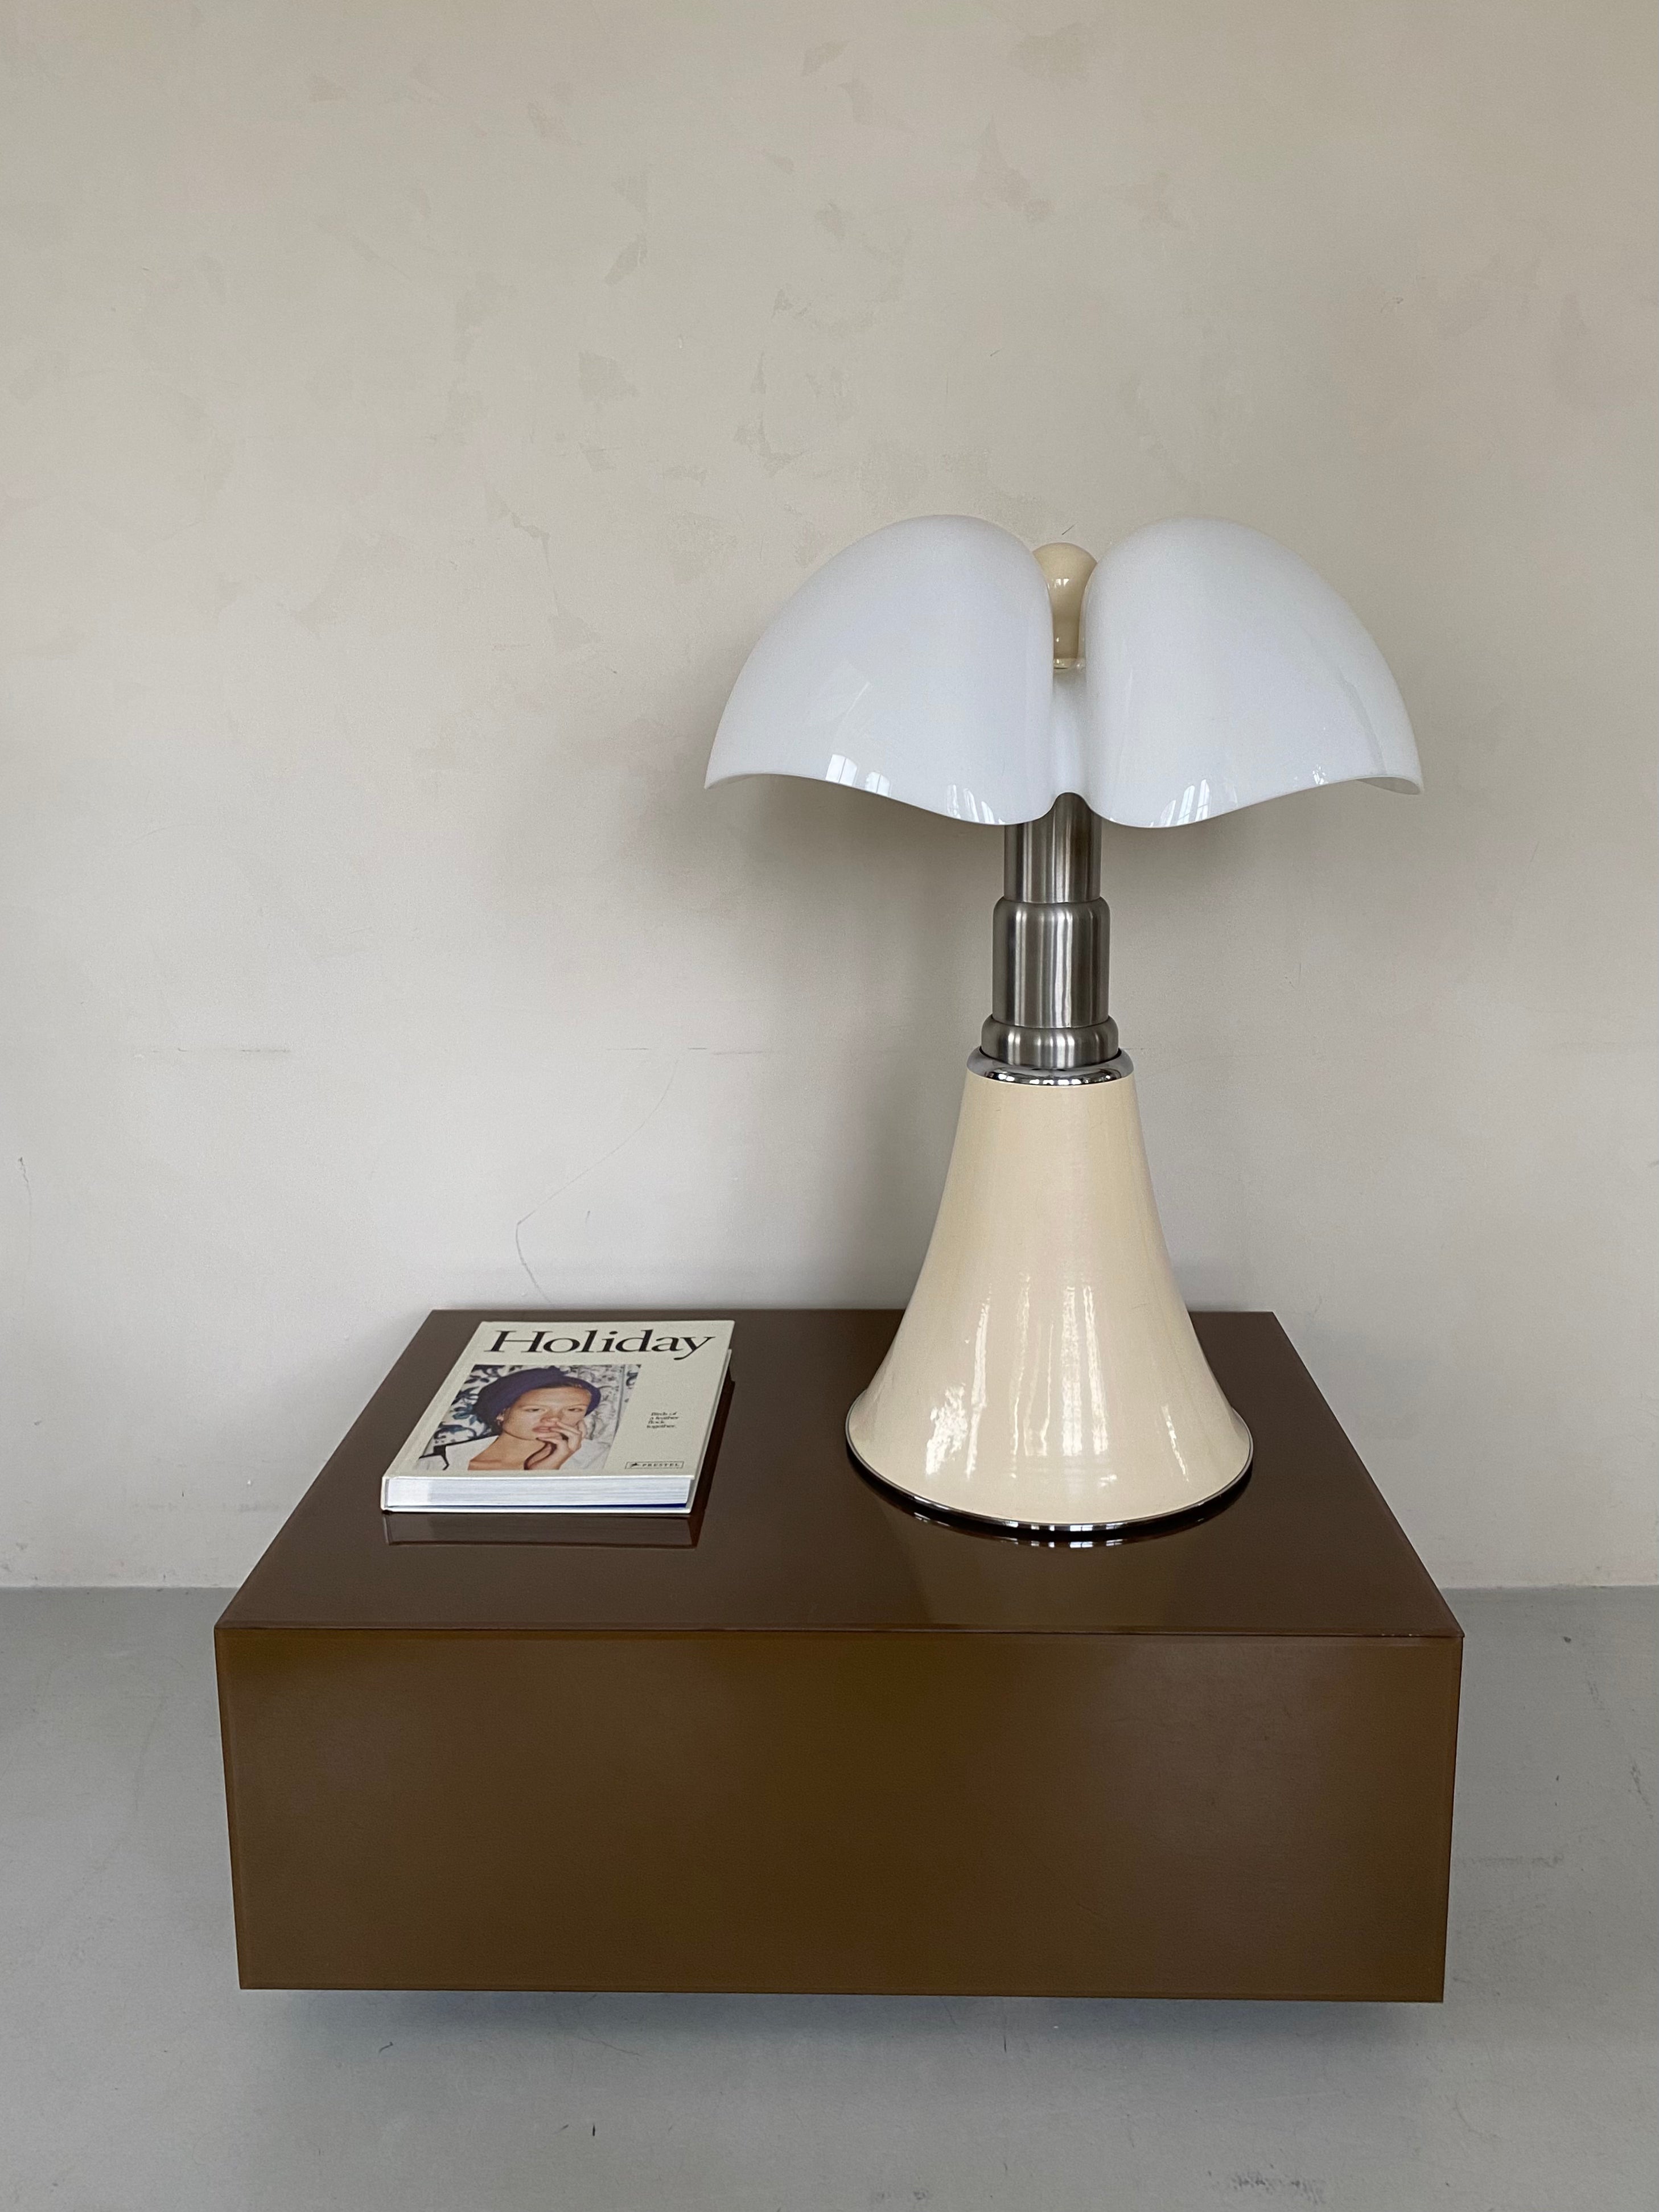 Pipistrello Lamp by Gae Aulenti for Martinelli Luce